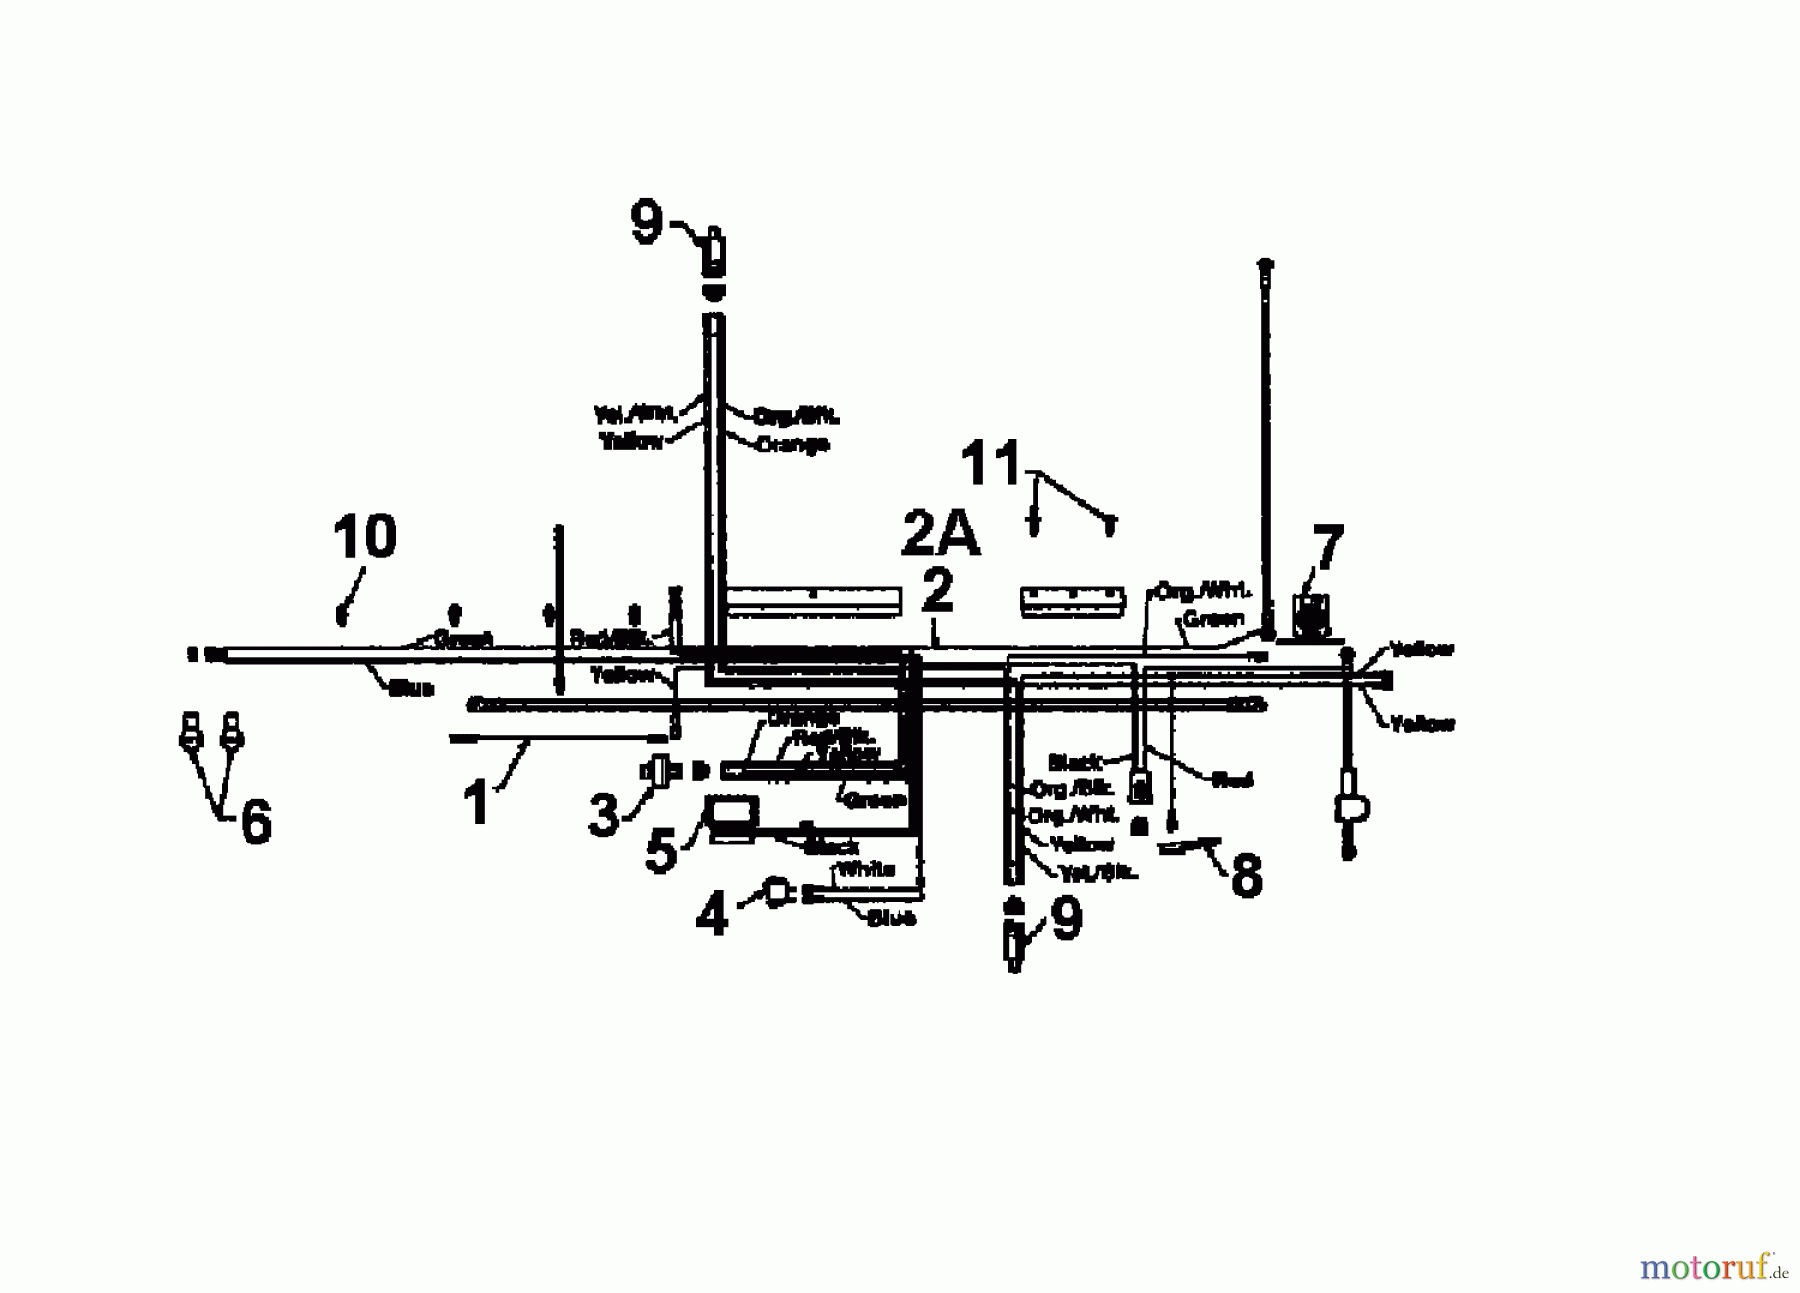  MTD Lawn tractors CG 14 13AM661G607  (1997) Wiring diagram single cylinder